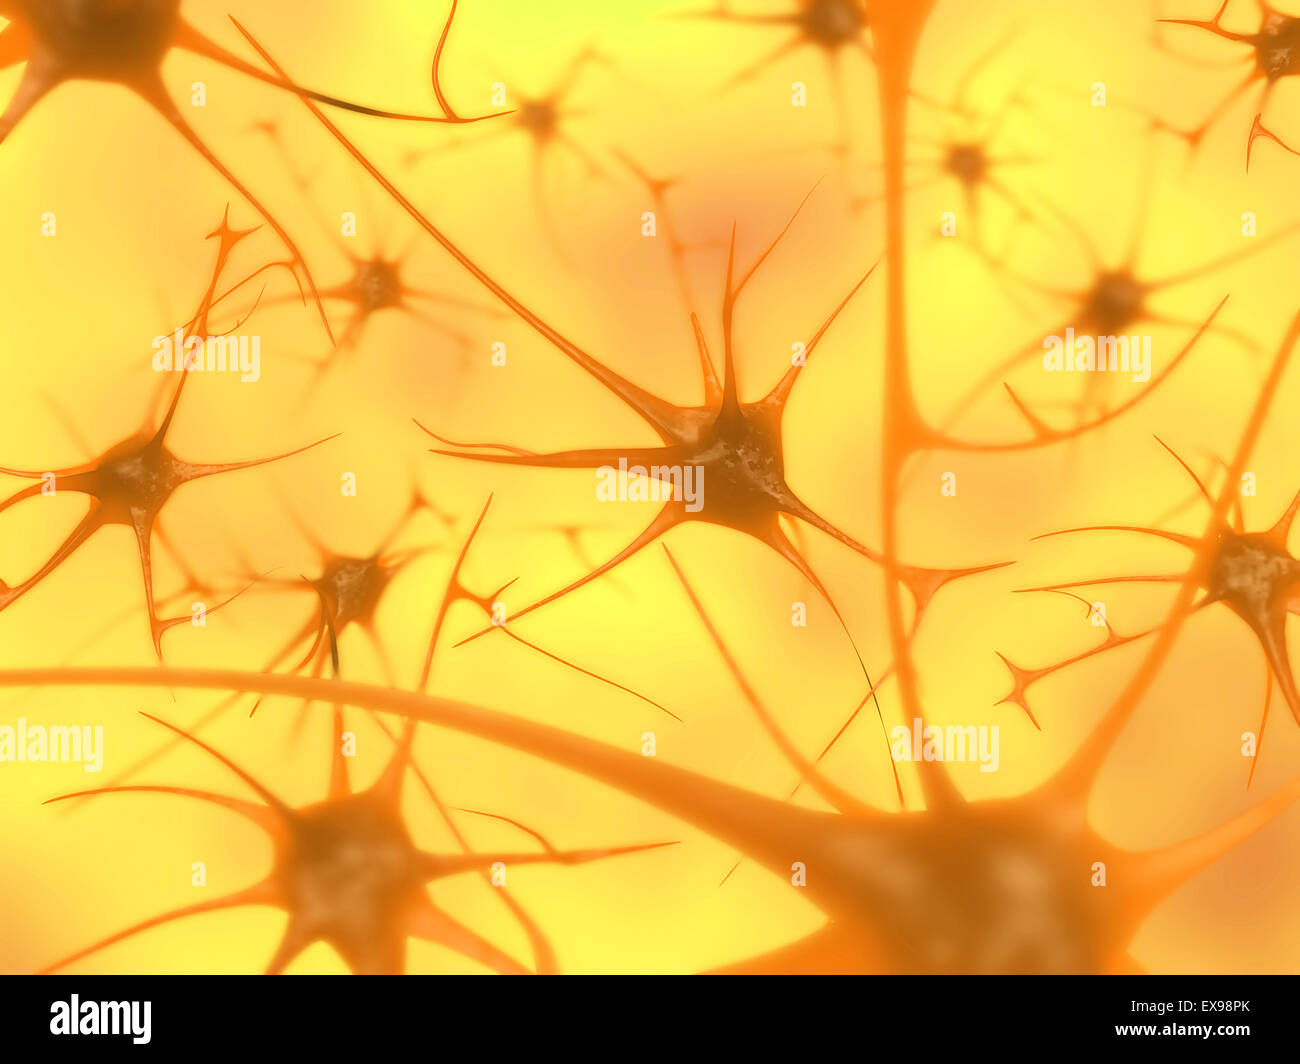 Illustrazione di neuroni del cervello. Foto Stock